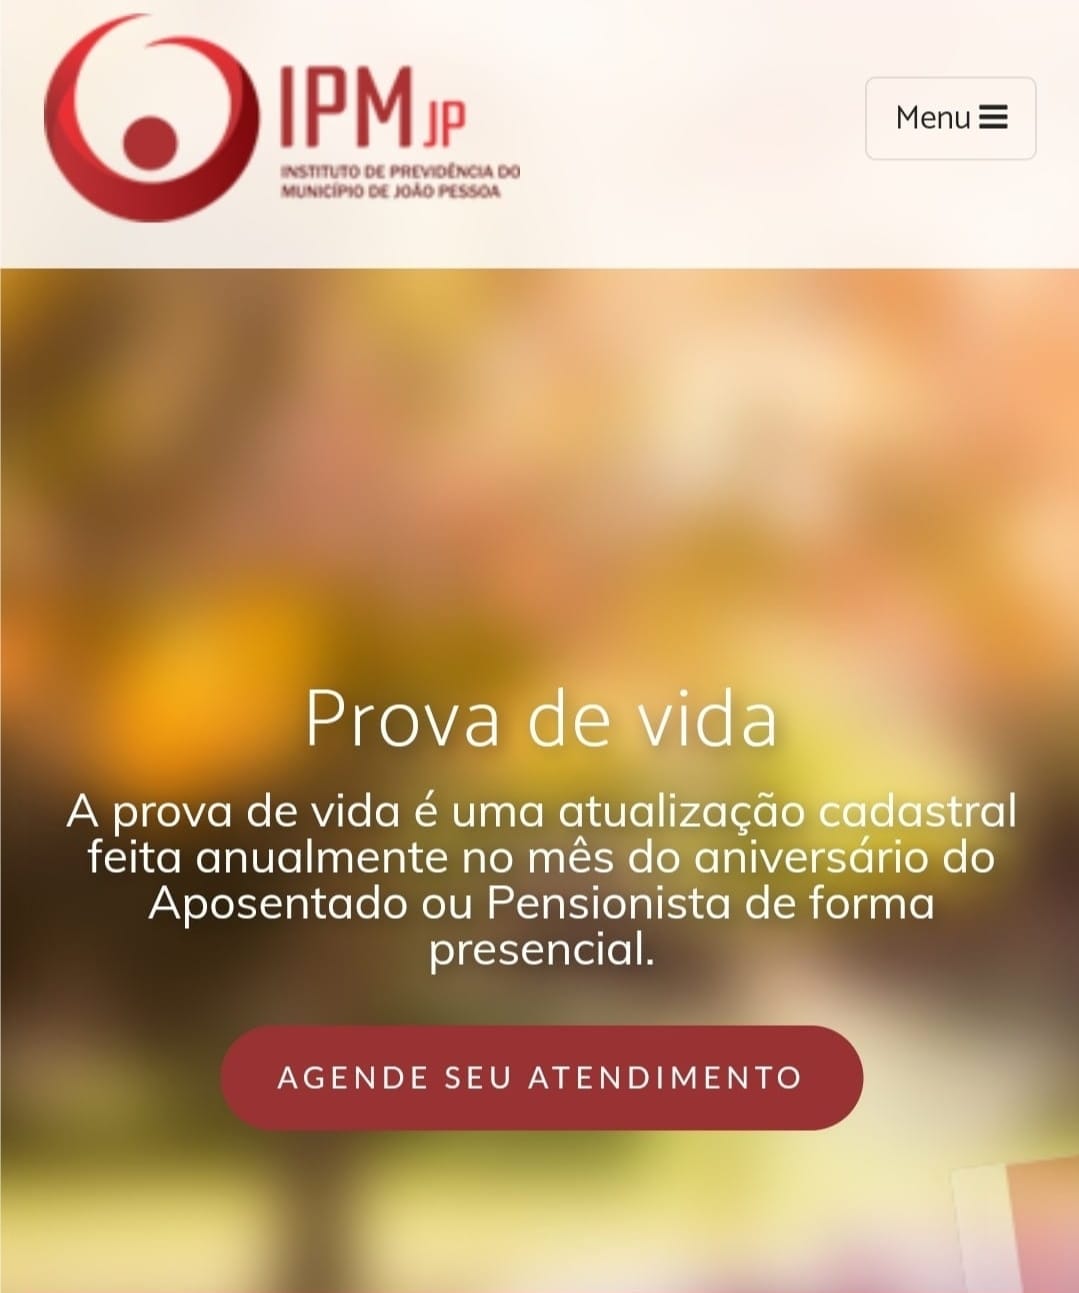 IPM reforça chamado aos aposentados e pensionistas para atualização de cadastro